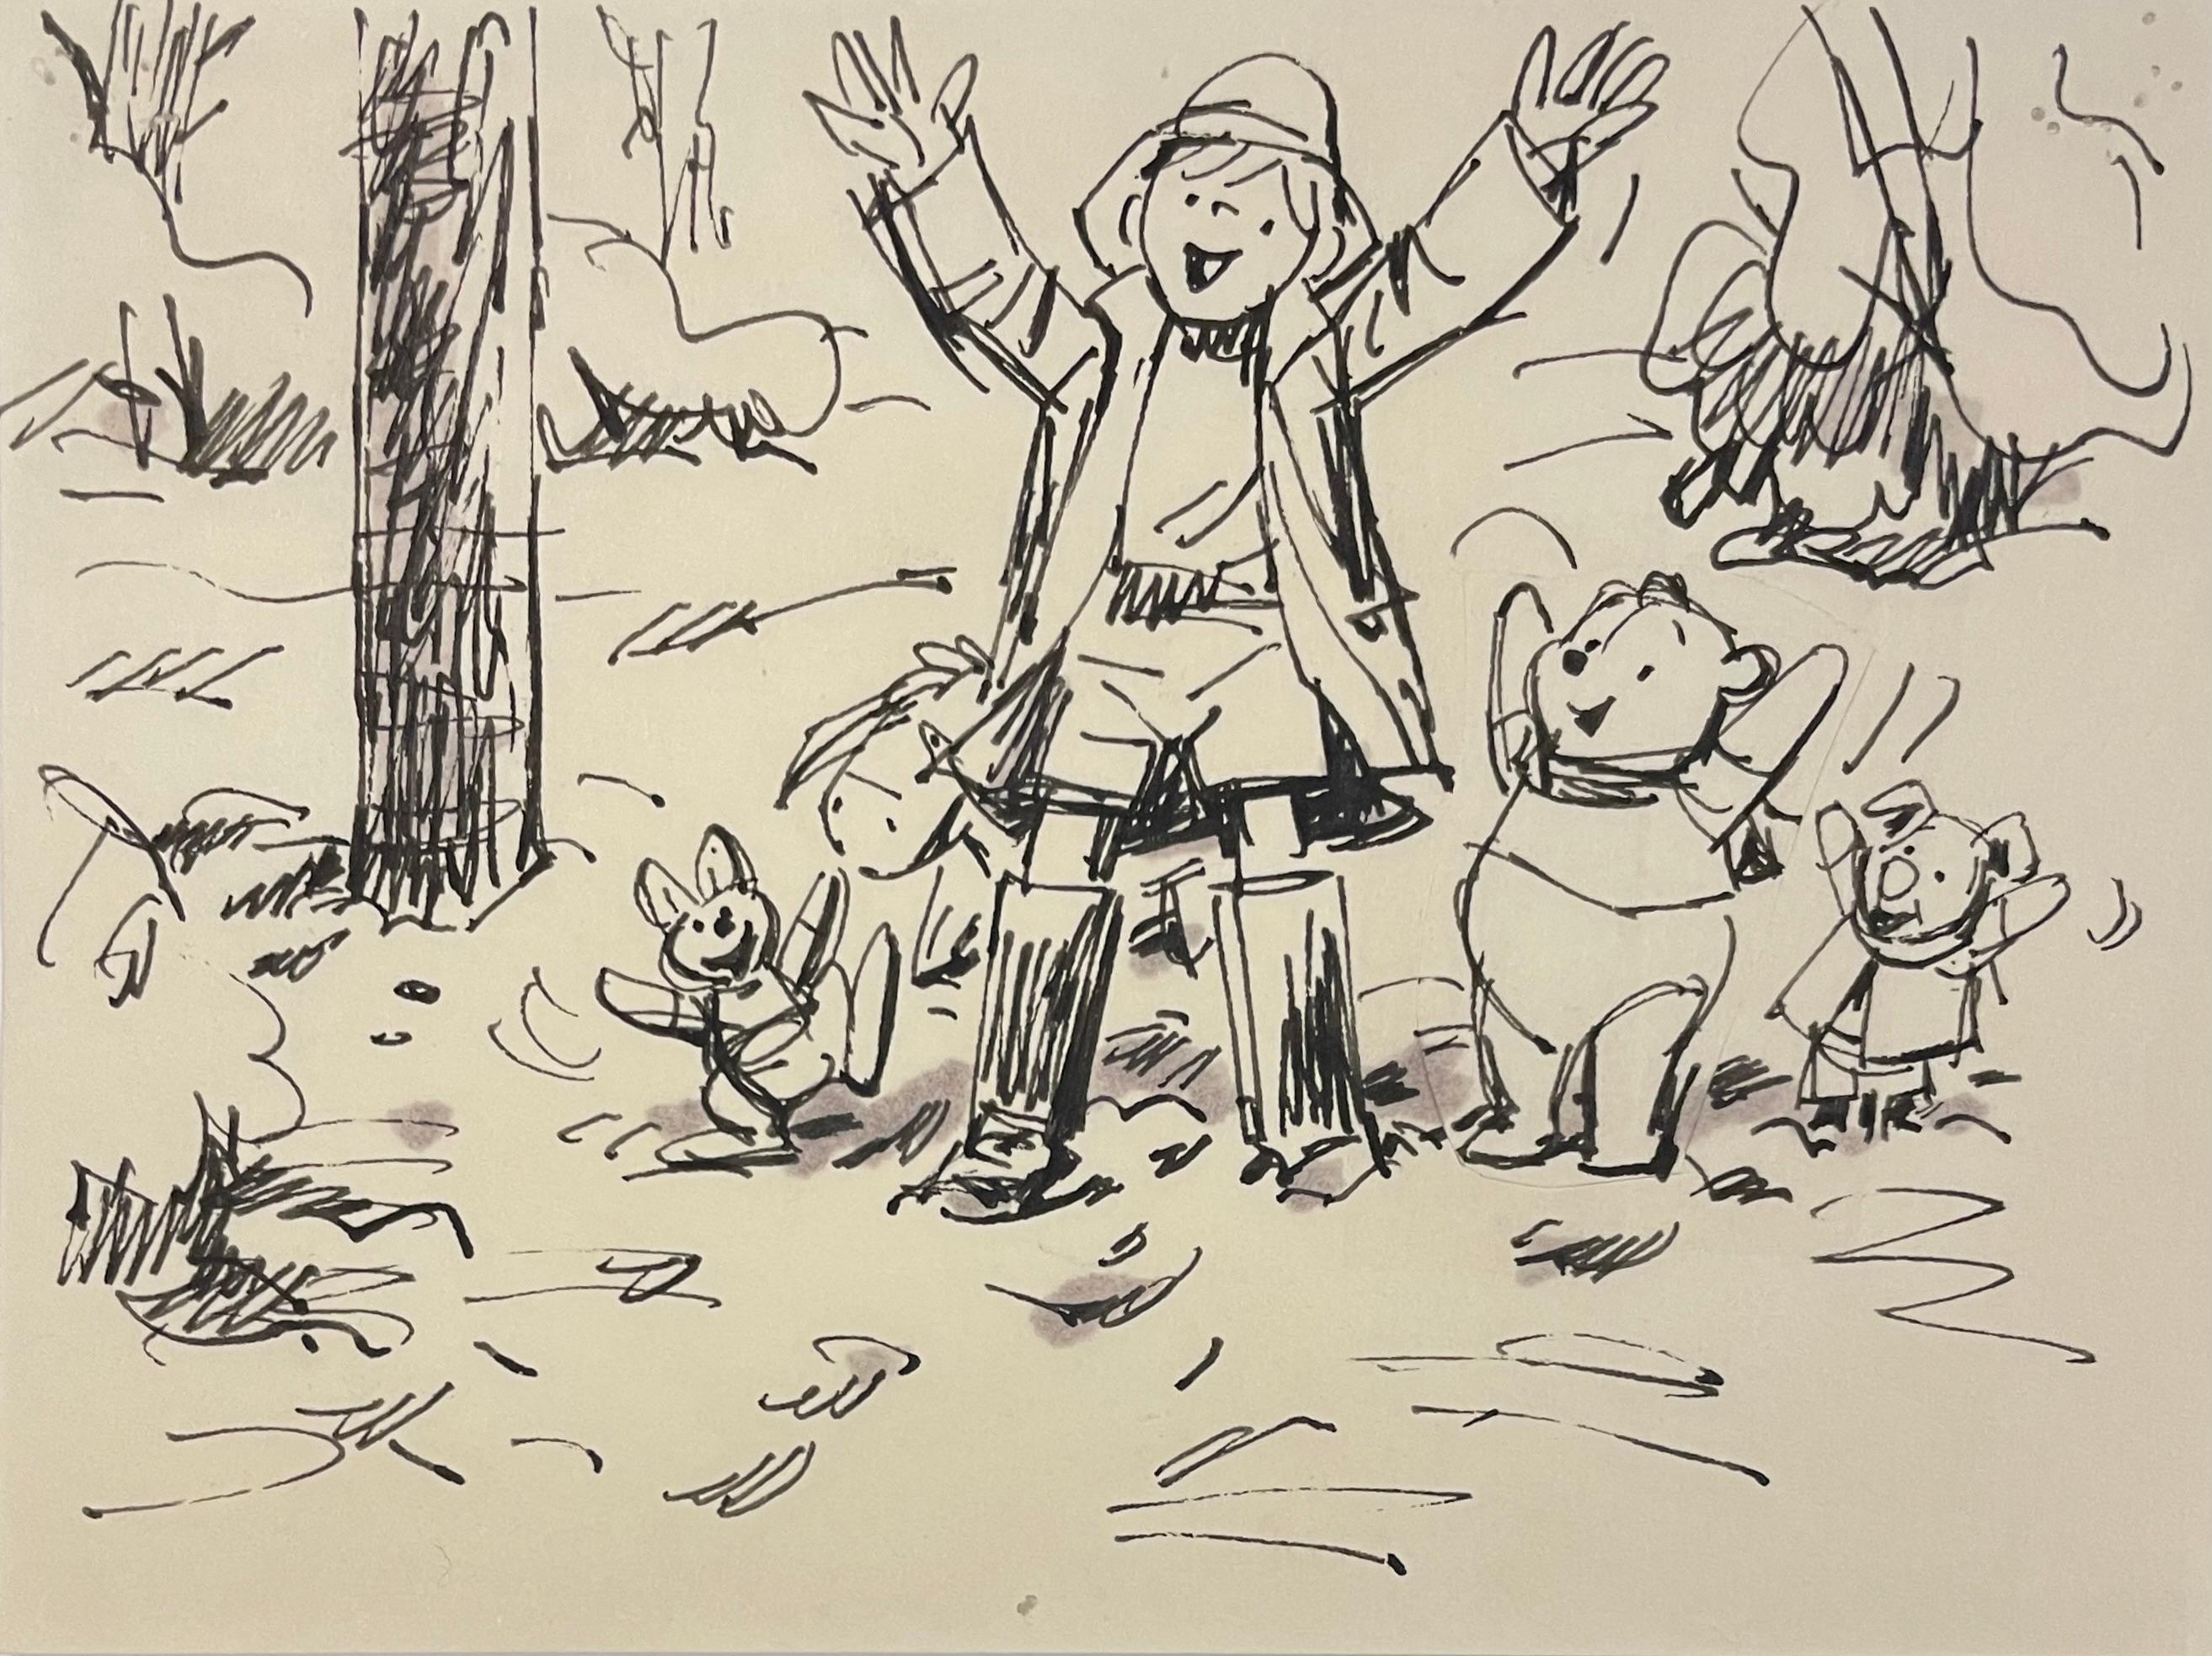 Winnie the Pooh and Tigger Too, Original Storyboard: Pooh, Piglet, Eeyore, Roo - Art by Walt Disney Studio Artists